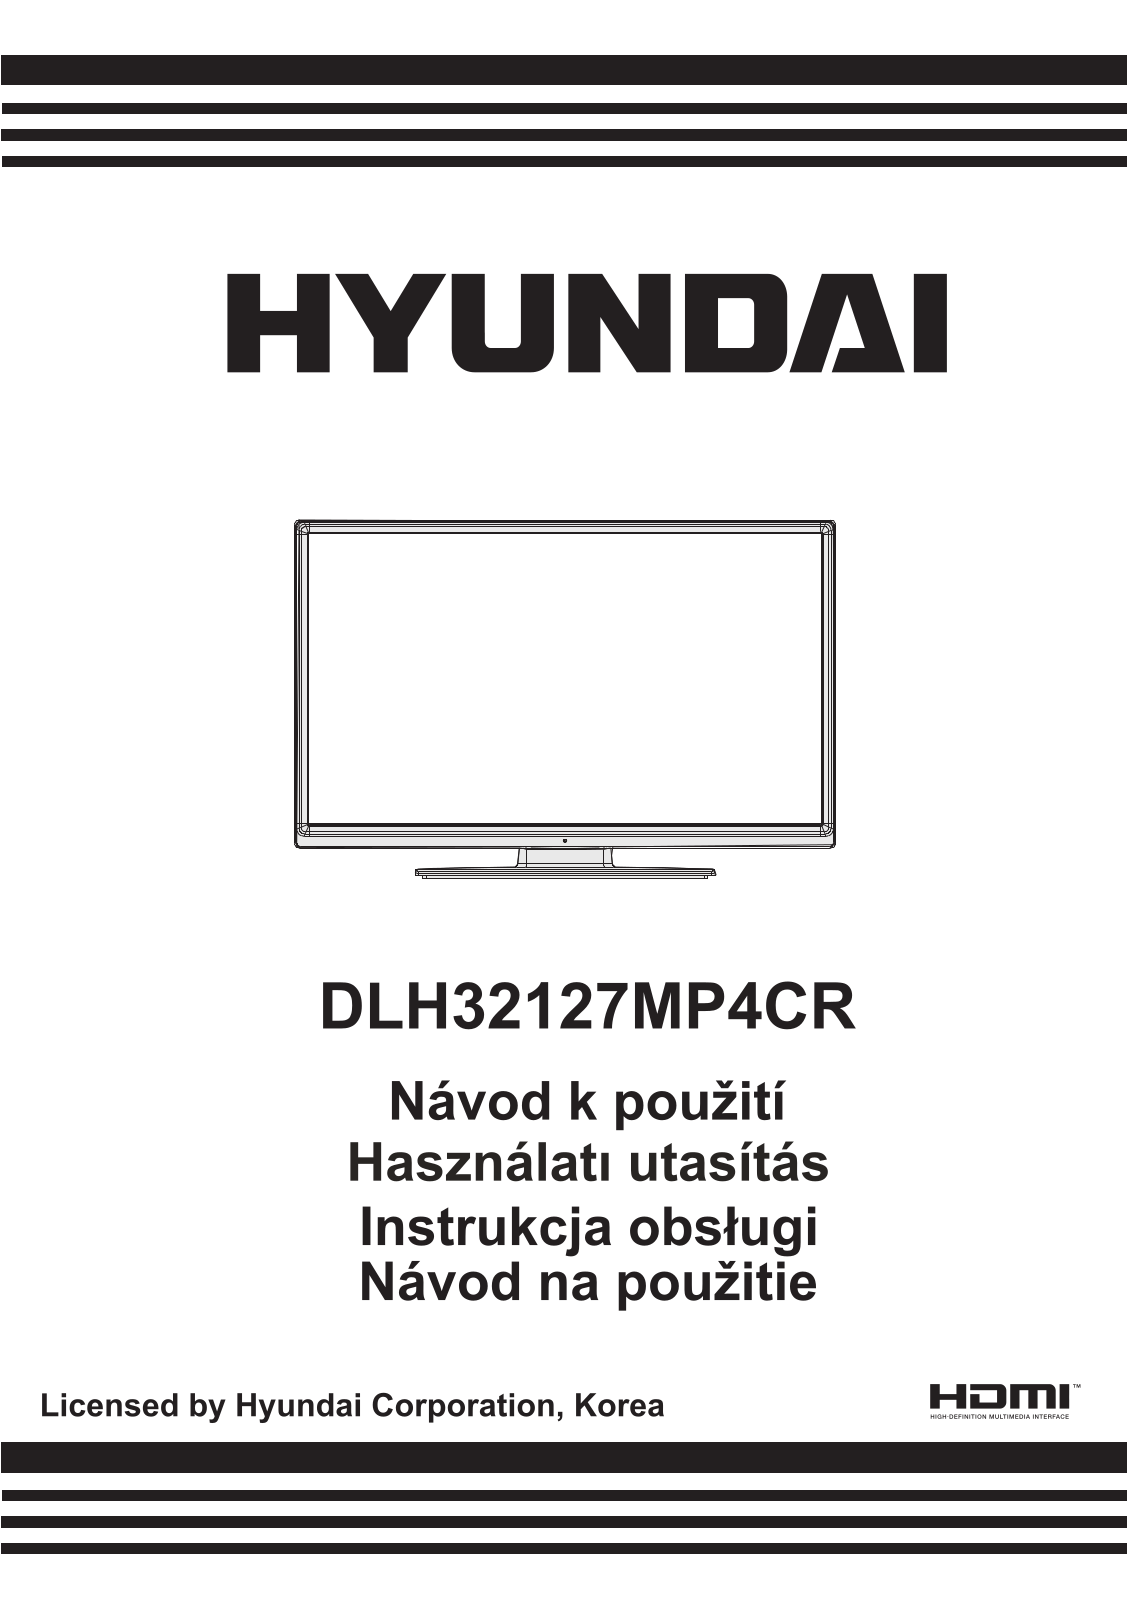 Hyundai DLH 32127 MP4CR User Manual